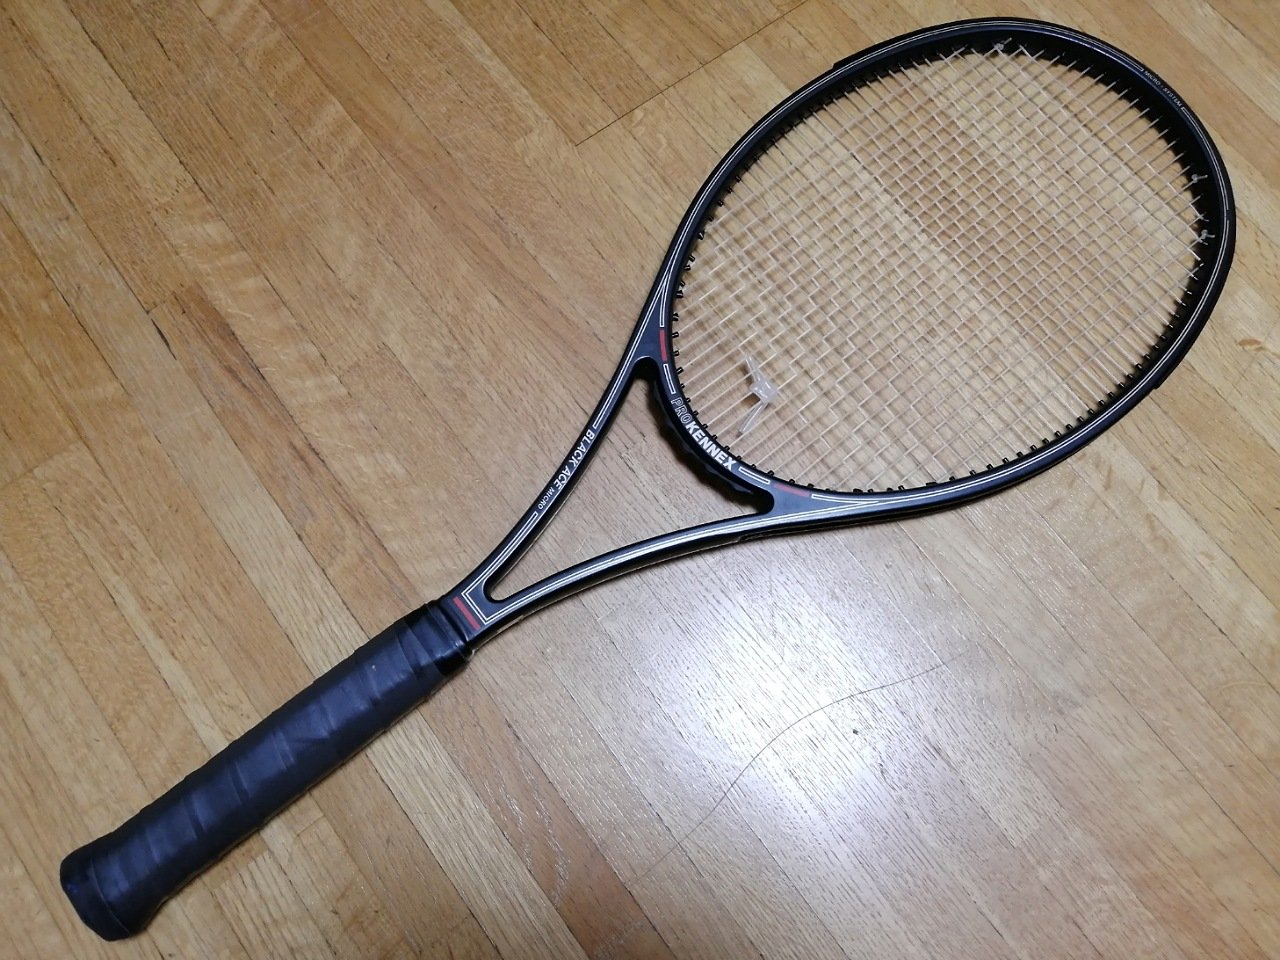 テニスラケット プロケネックス ブラック エース マイクロ【トップバンパー割れ有り】 (G4相当)PROKENNEX BLACK ACE MICRO